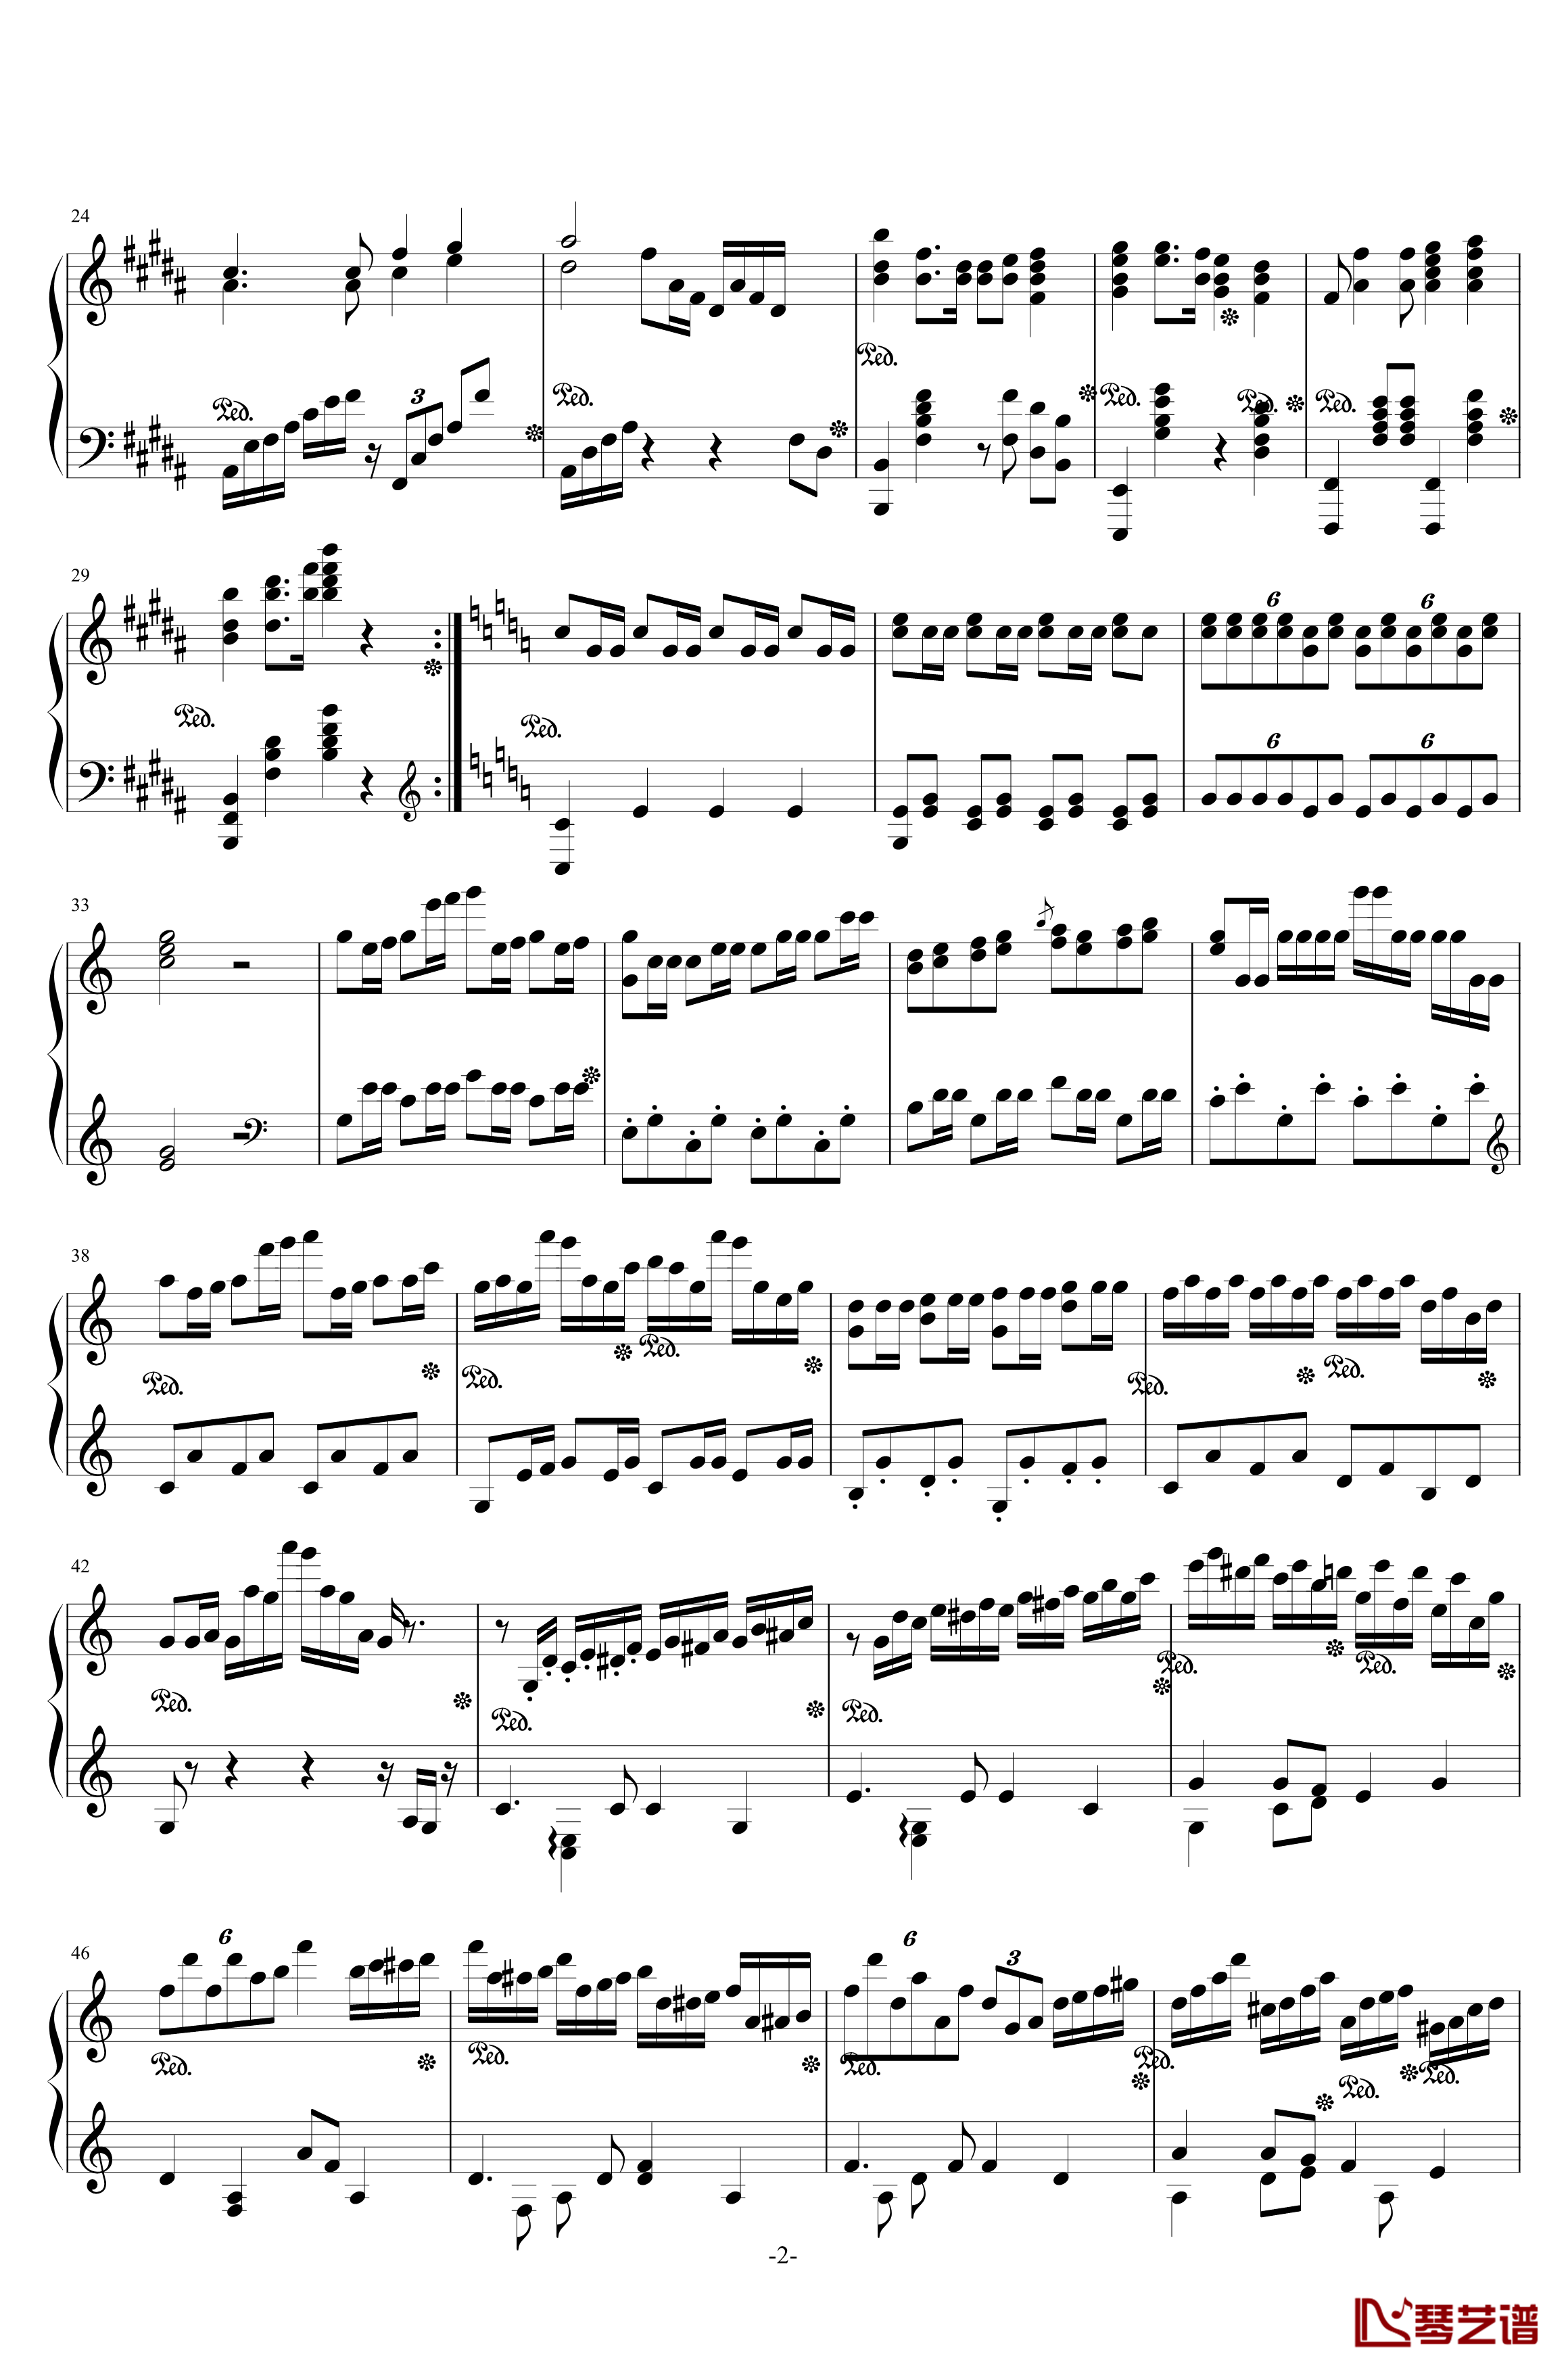 西安音乐学院校歌钢琴谱-校园歌曲2